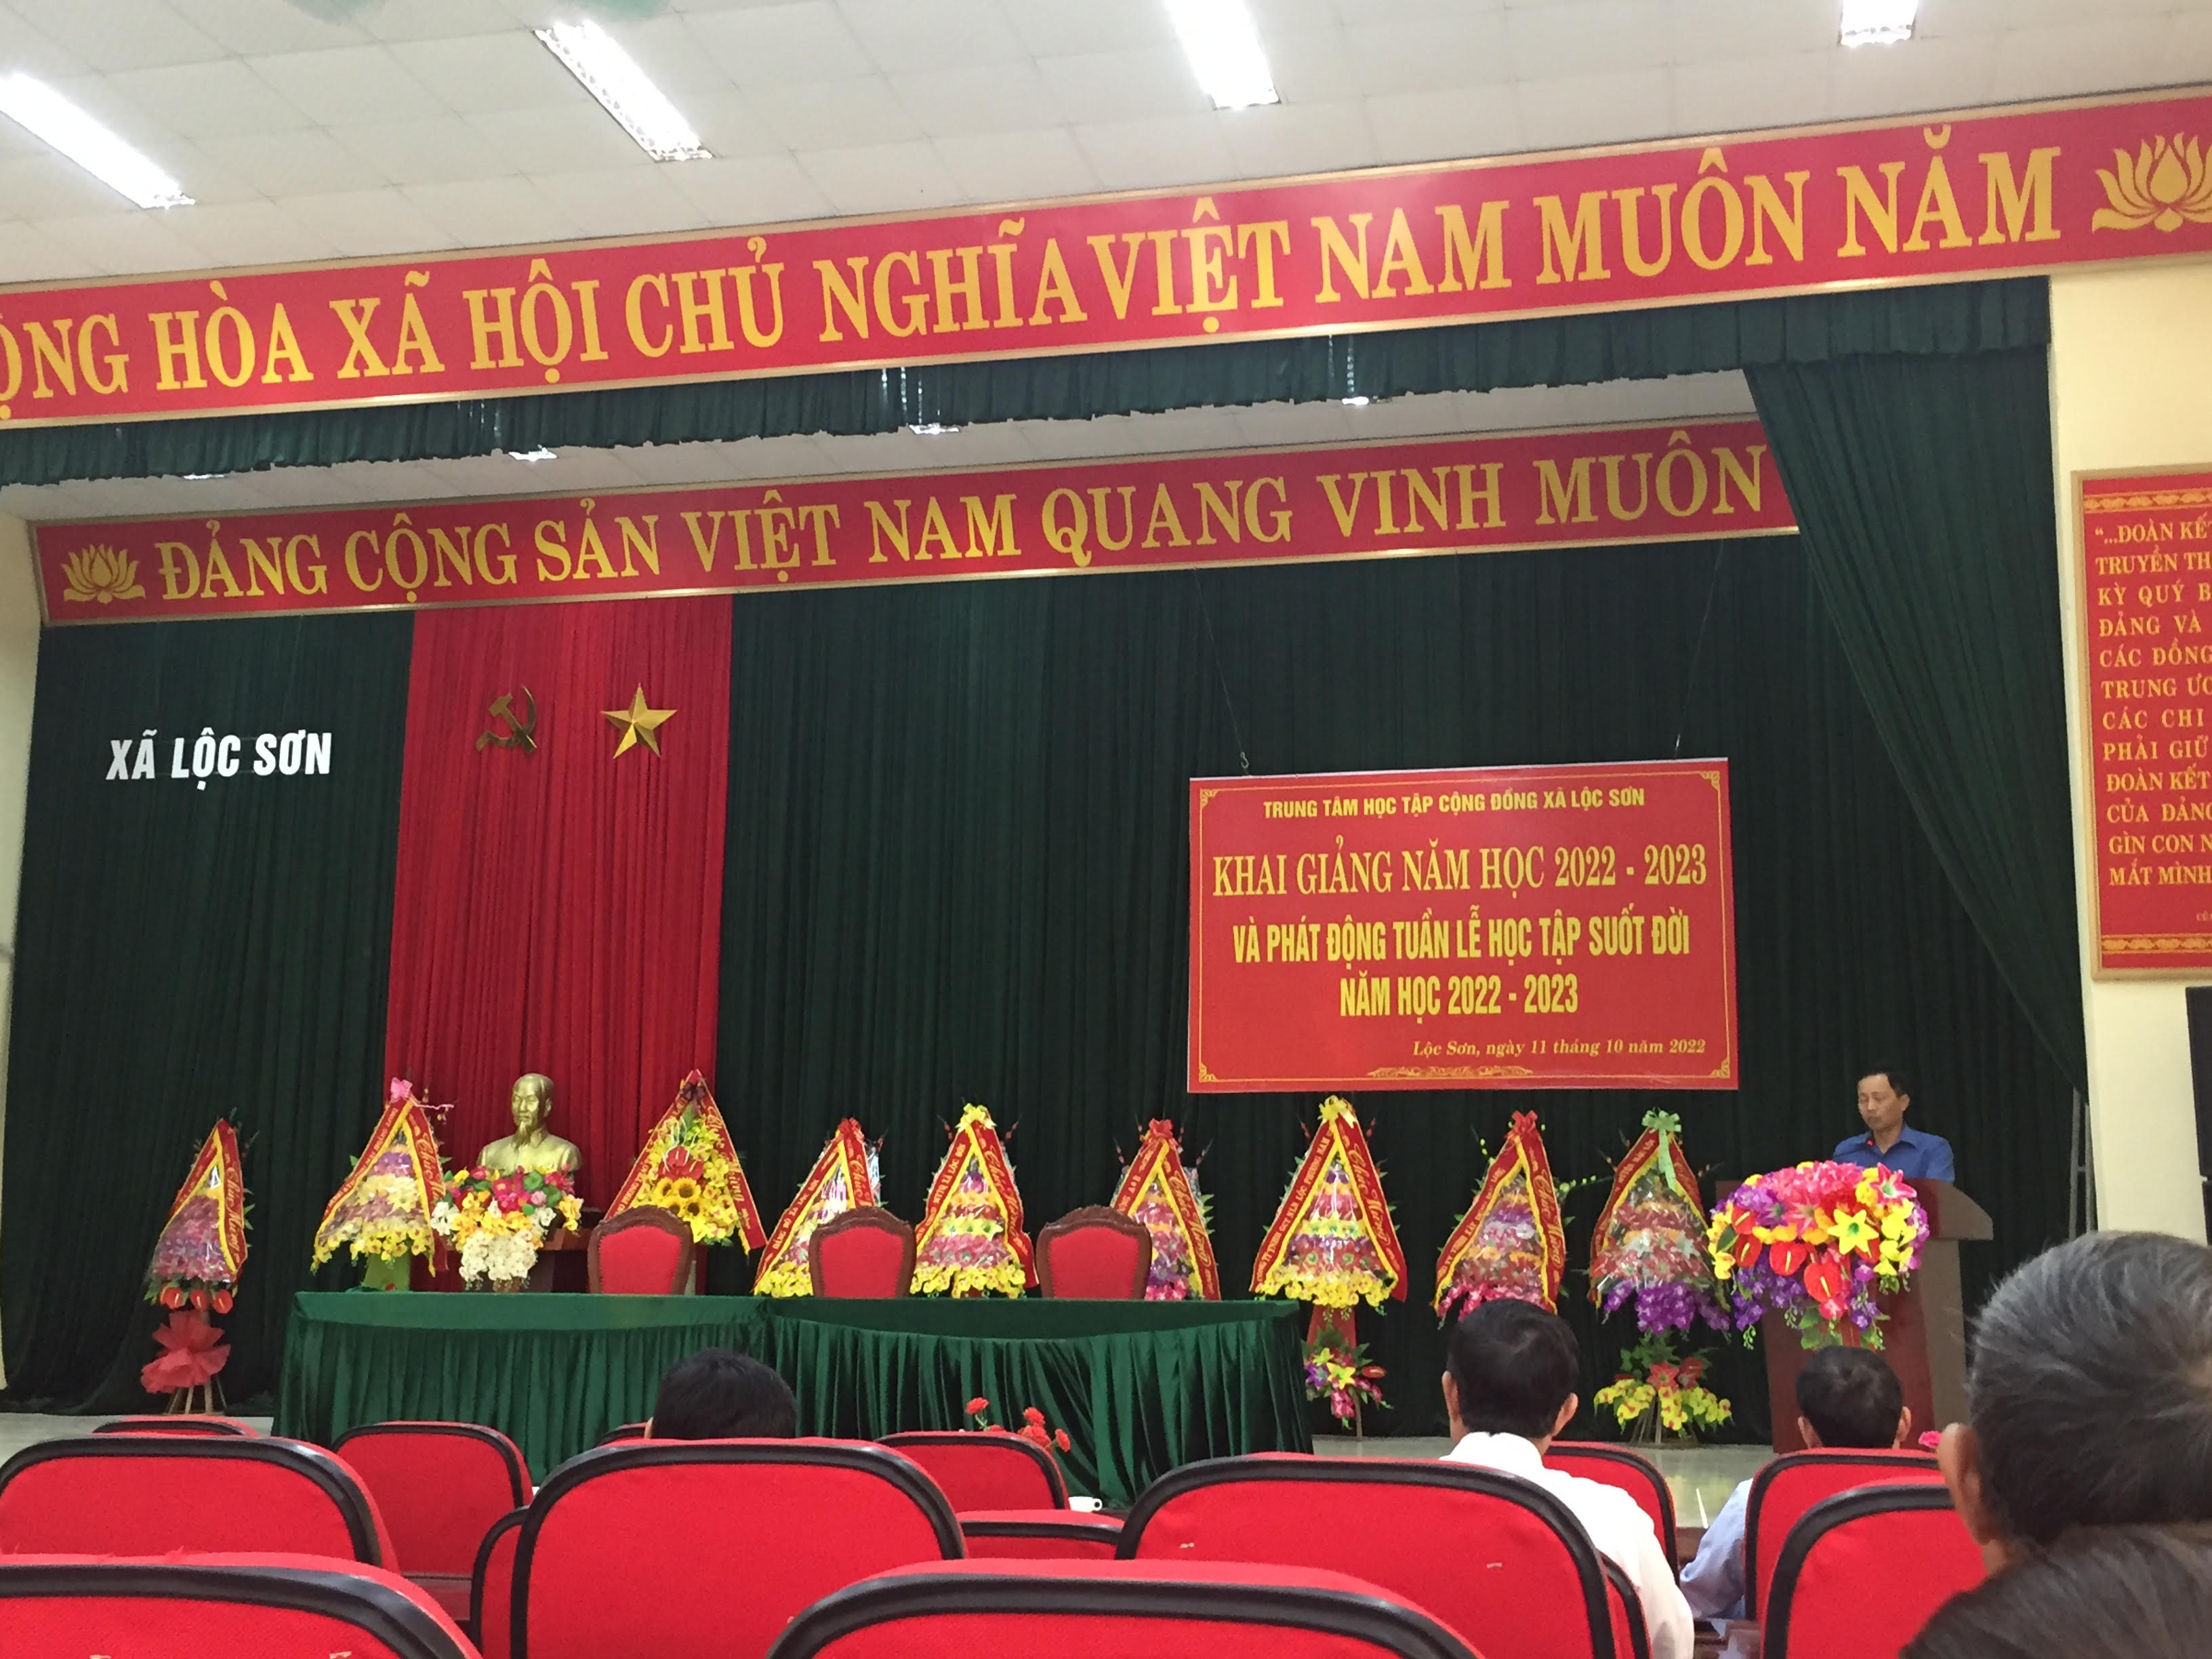 Trung tâm học tập cộng đồng xã Lộc Sơn tổ chức Lễ khai giảng năm học 2022-2023 Và hưởng ứng tuần lễ Học tập suốt đời năm 2022